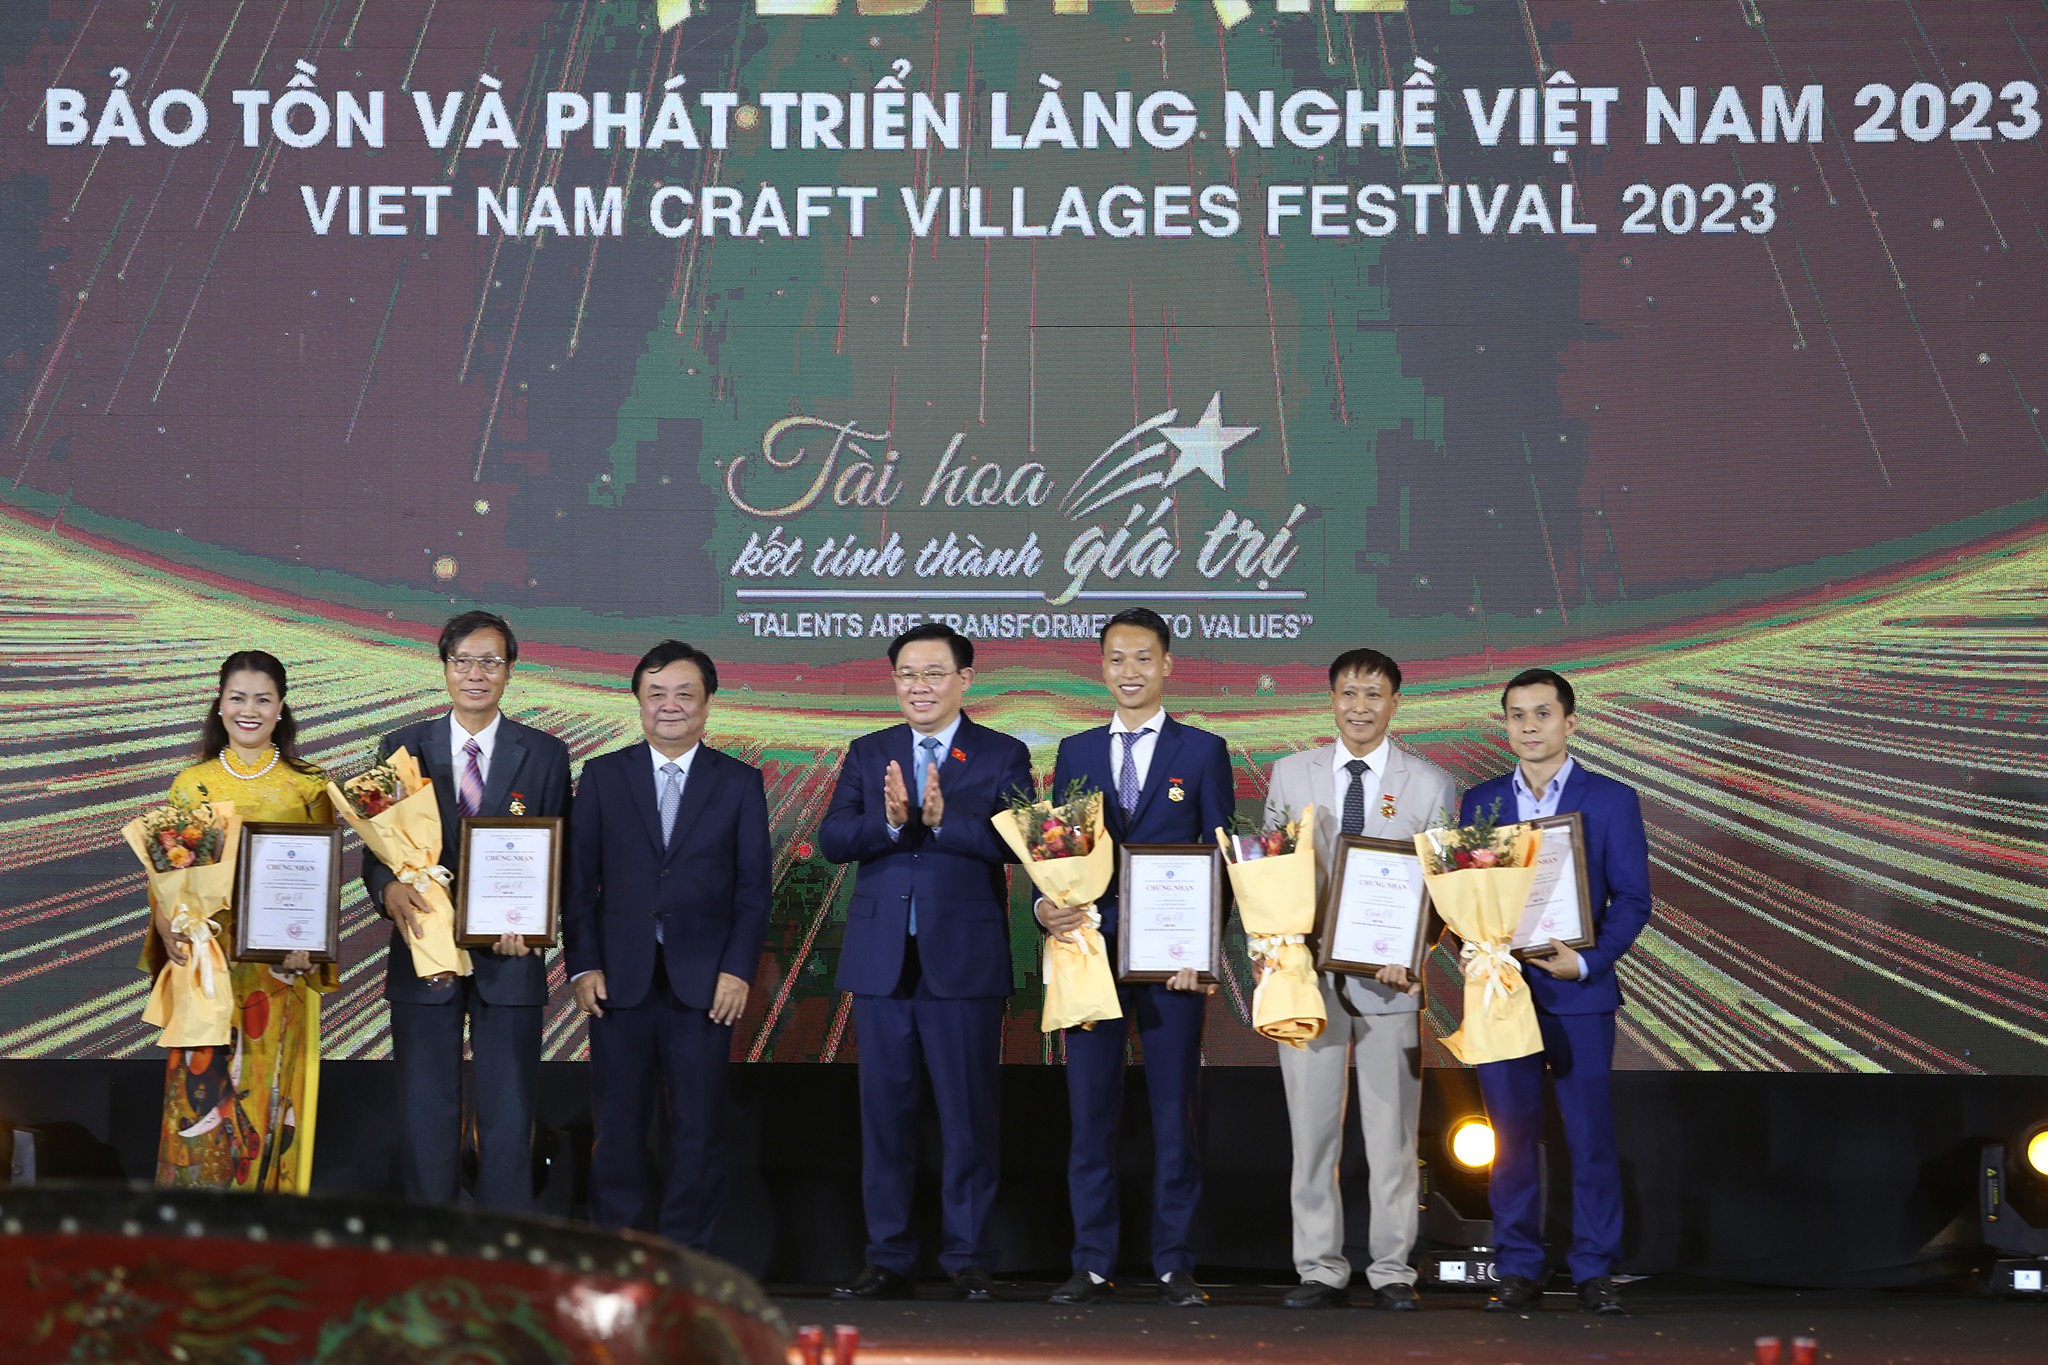 Chủ tịch Quốc hội Vương Đình Huệ và Bộ trưởng Bộ Nông nghiệp và Phát triển Nông thôn Lê Minh Hoan trao giải A cho các nghệ nhân tham dự Festival